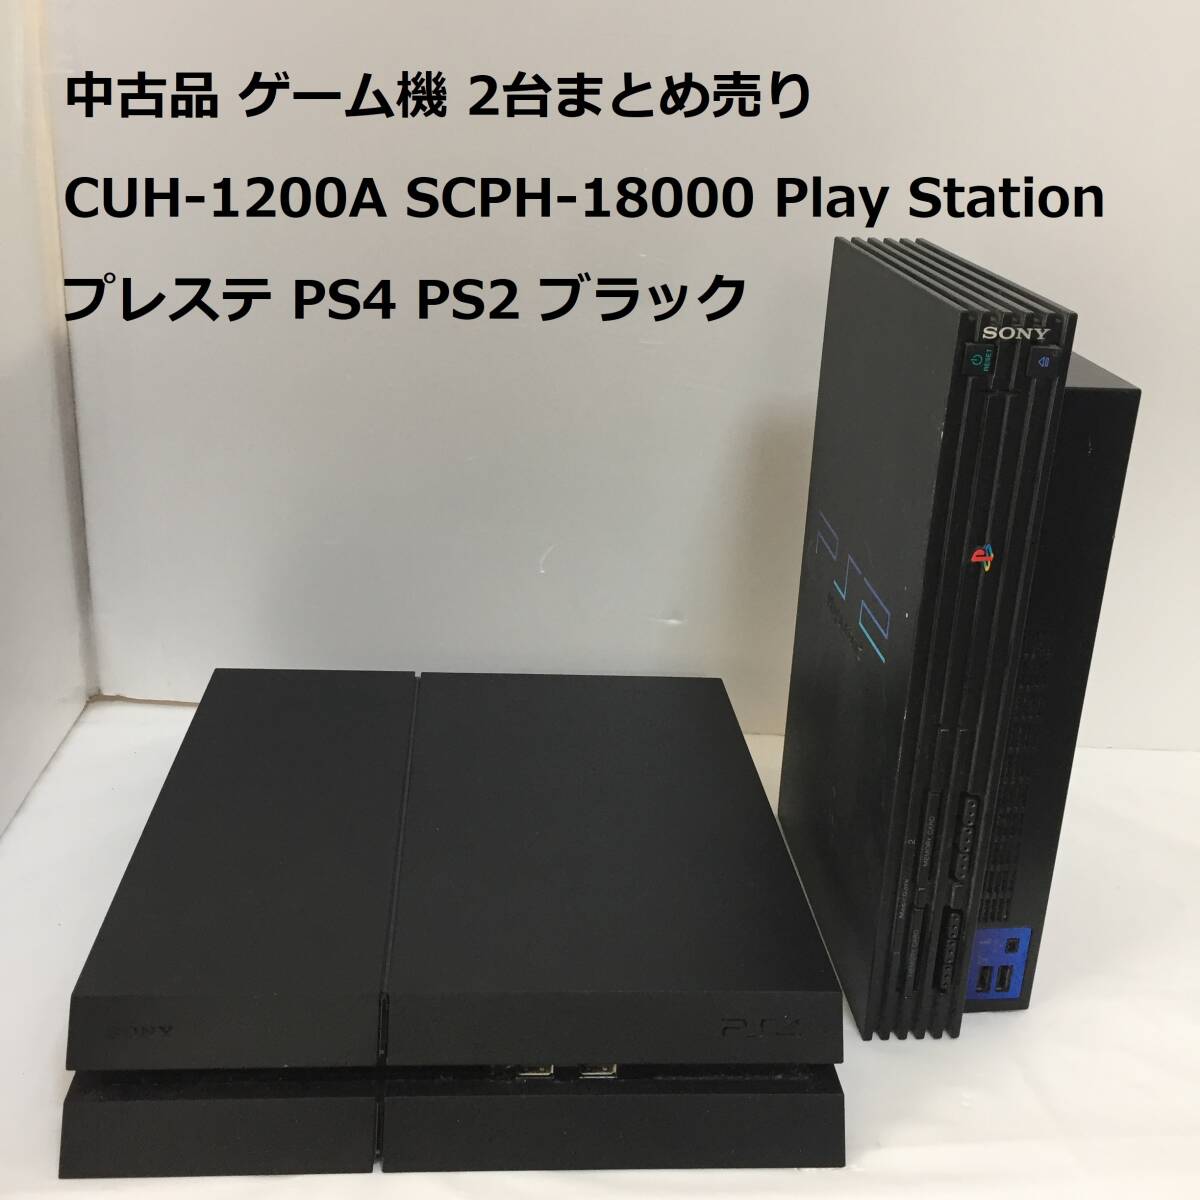 中古品 ゲーム機器 CUH-1200A SCPH-18000 Play Station 2台まとめ売り プレイステーション プレステ PS4 PS2 ブラック